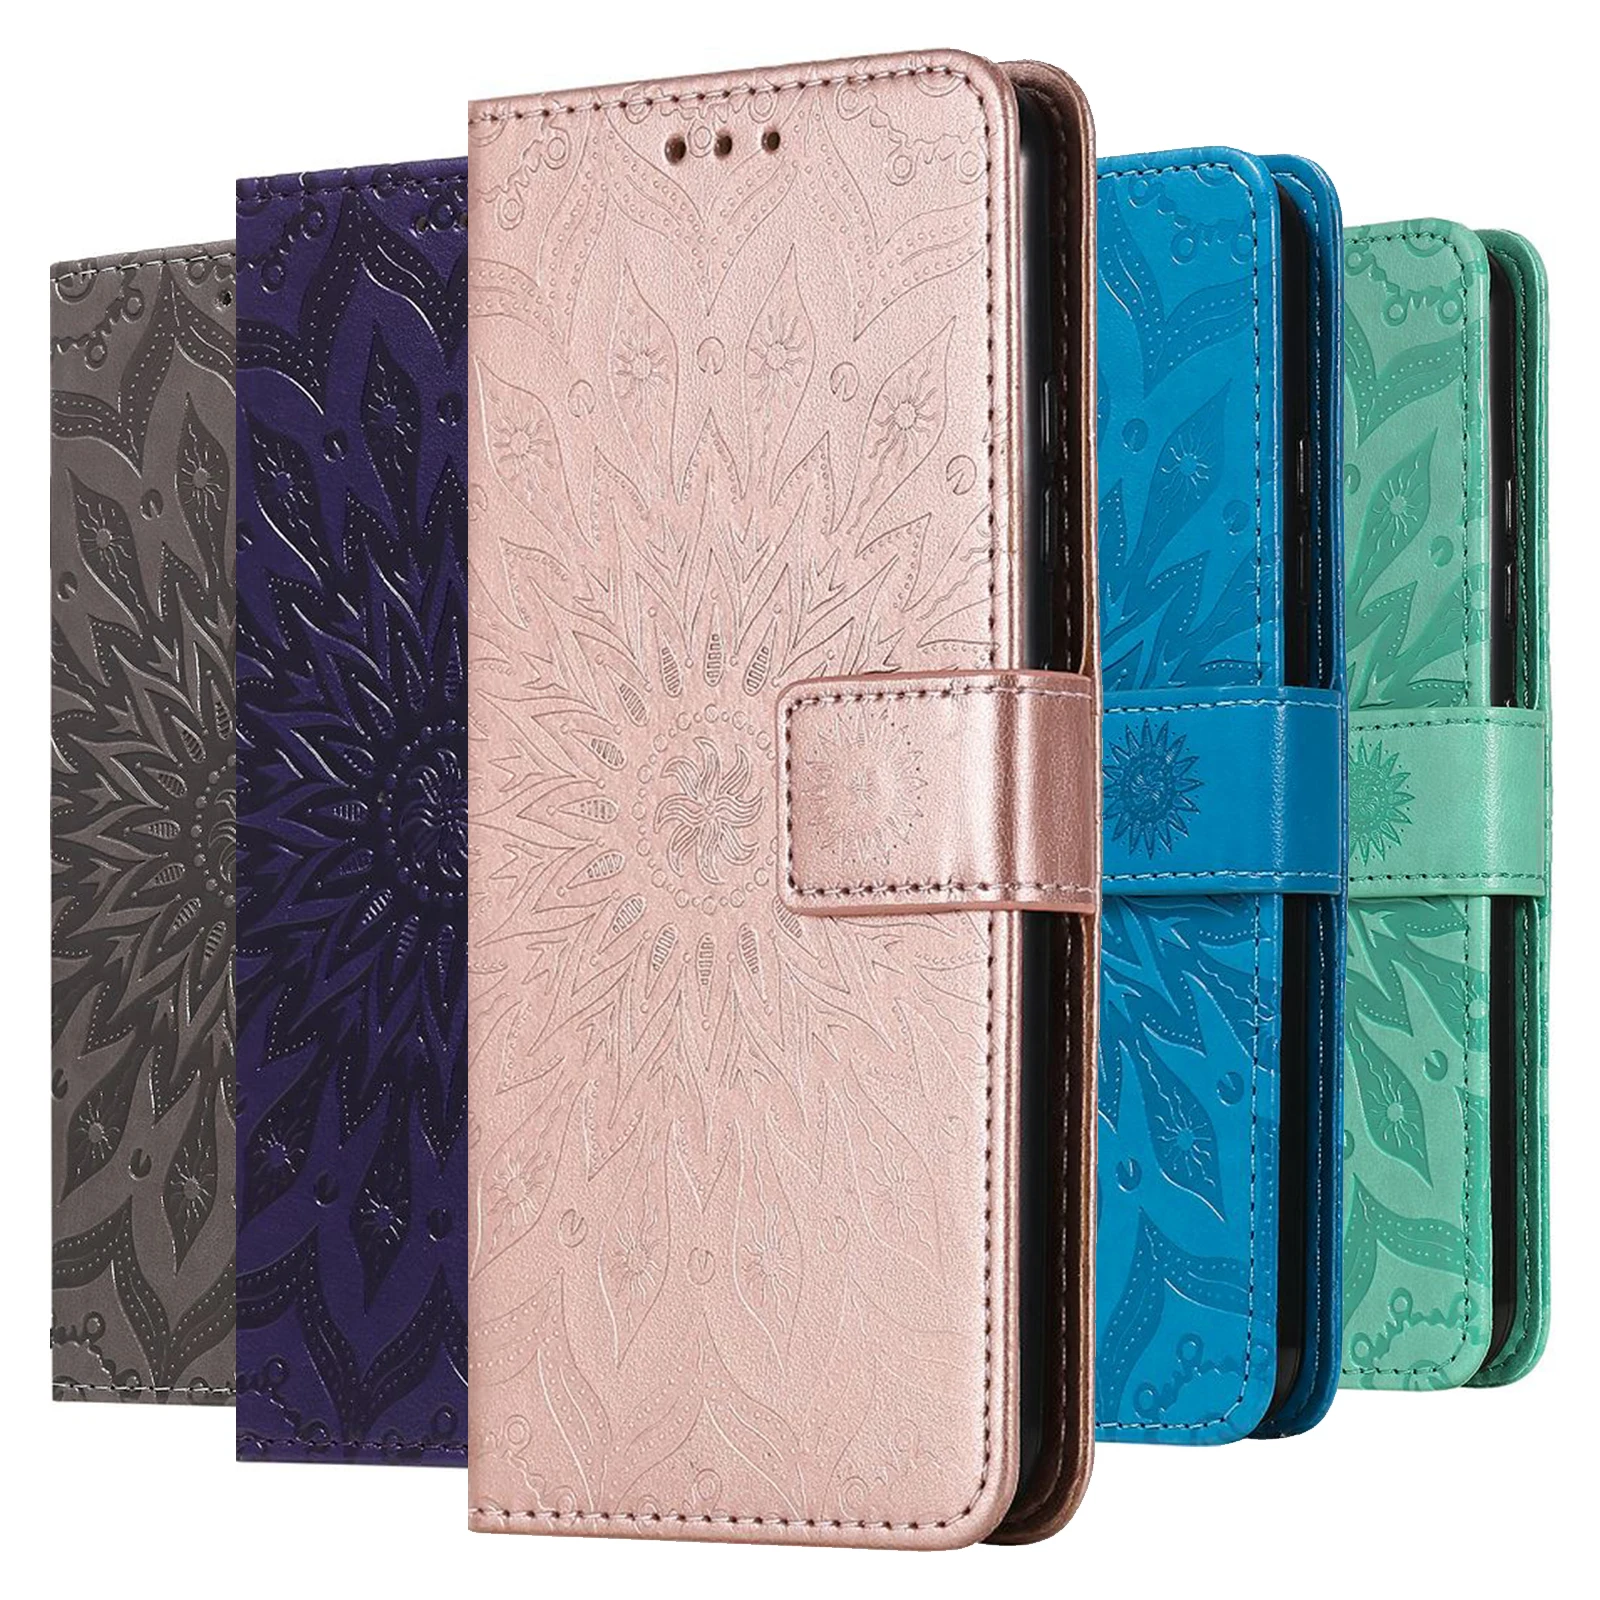 

Magnetic Wallet Flip Case For LG Stylo 4 5 6 7 4G 5G K8 K9 K10 K11 K20 K30 K40 K50 K60 K51 K61 K41S K51S Mobile Phone Bag Cover